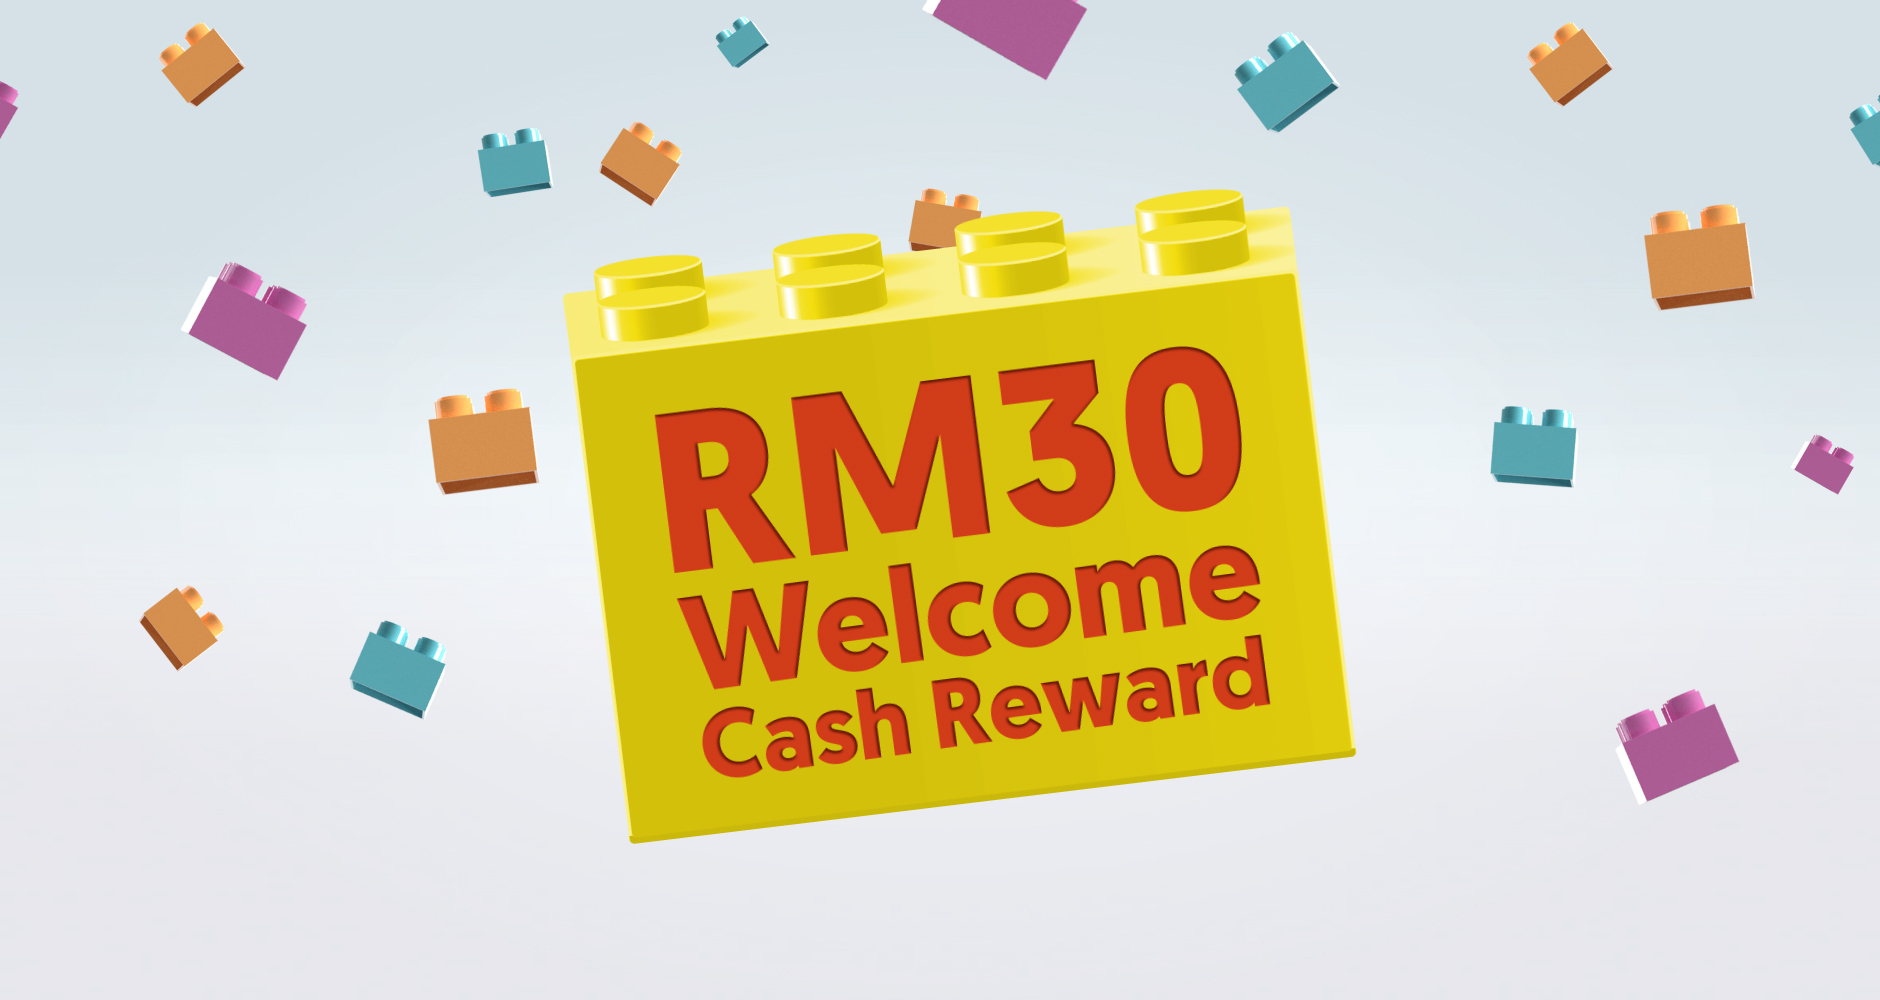 RM30 Welcome Cash Reward